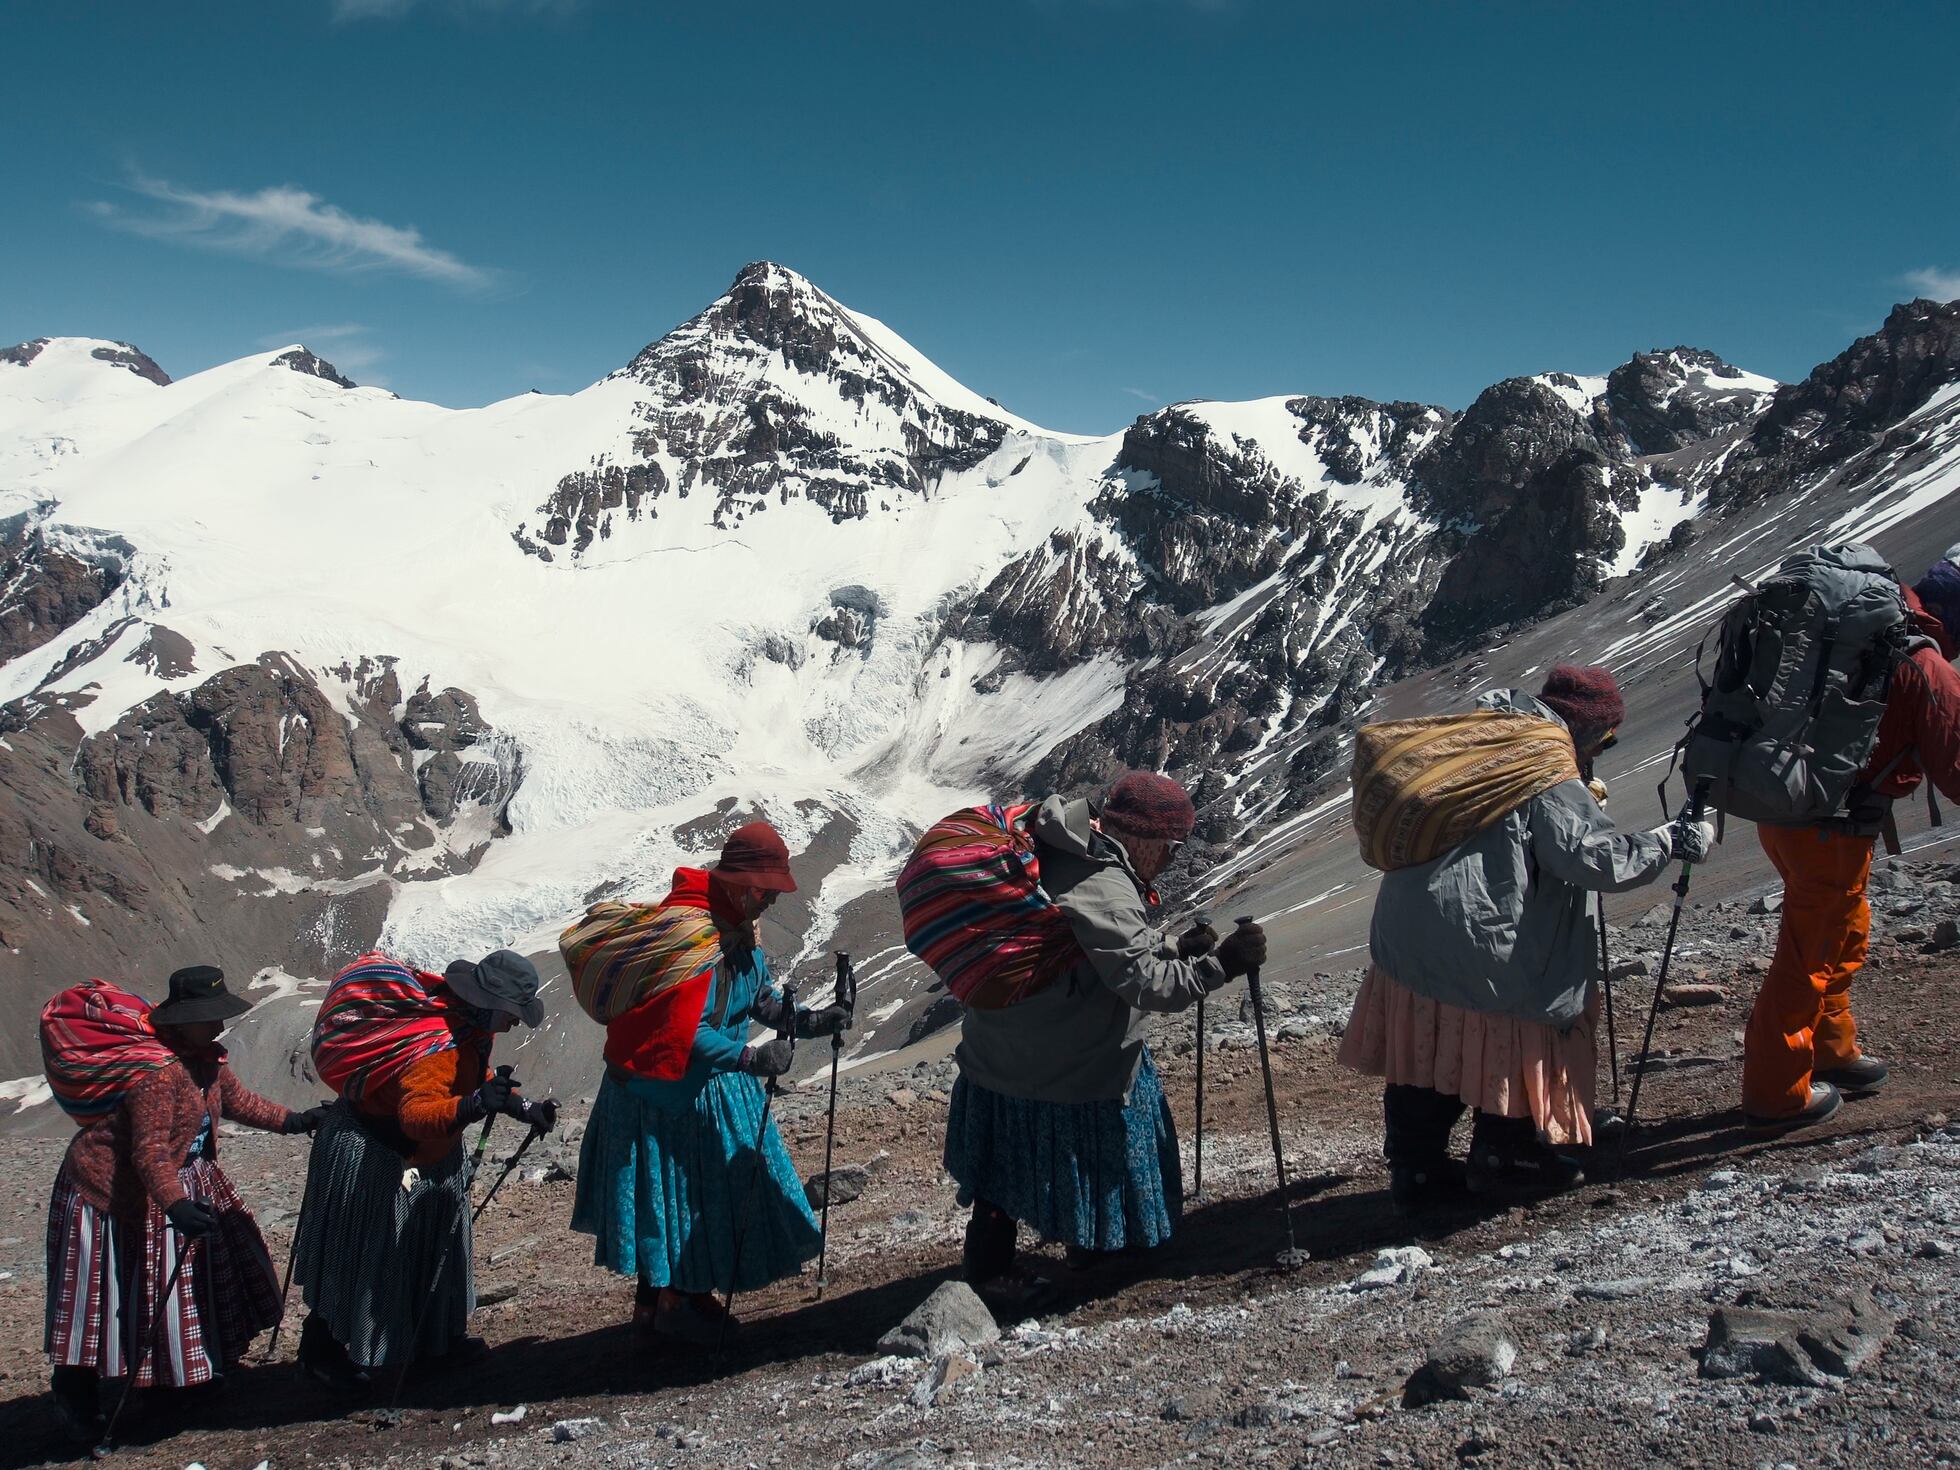 Cholitas conquistan montañas en Bolivia contra el machismo